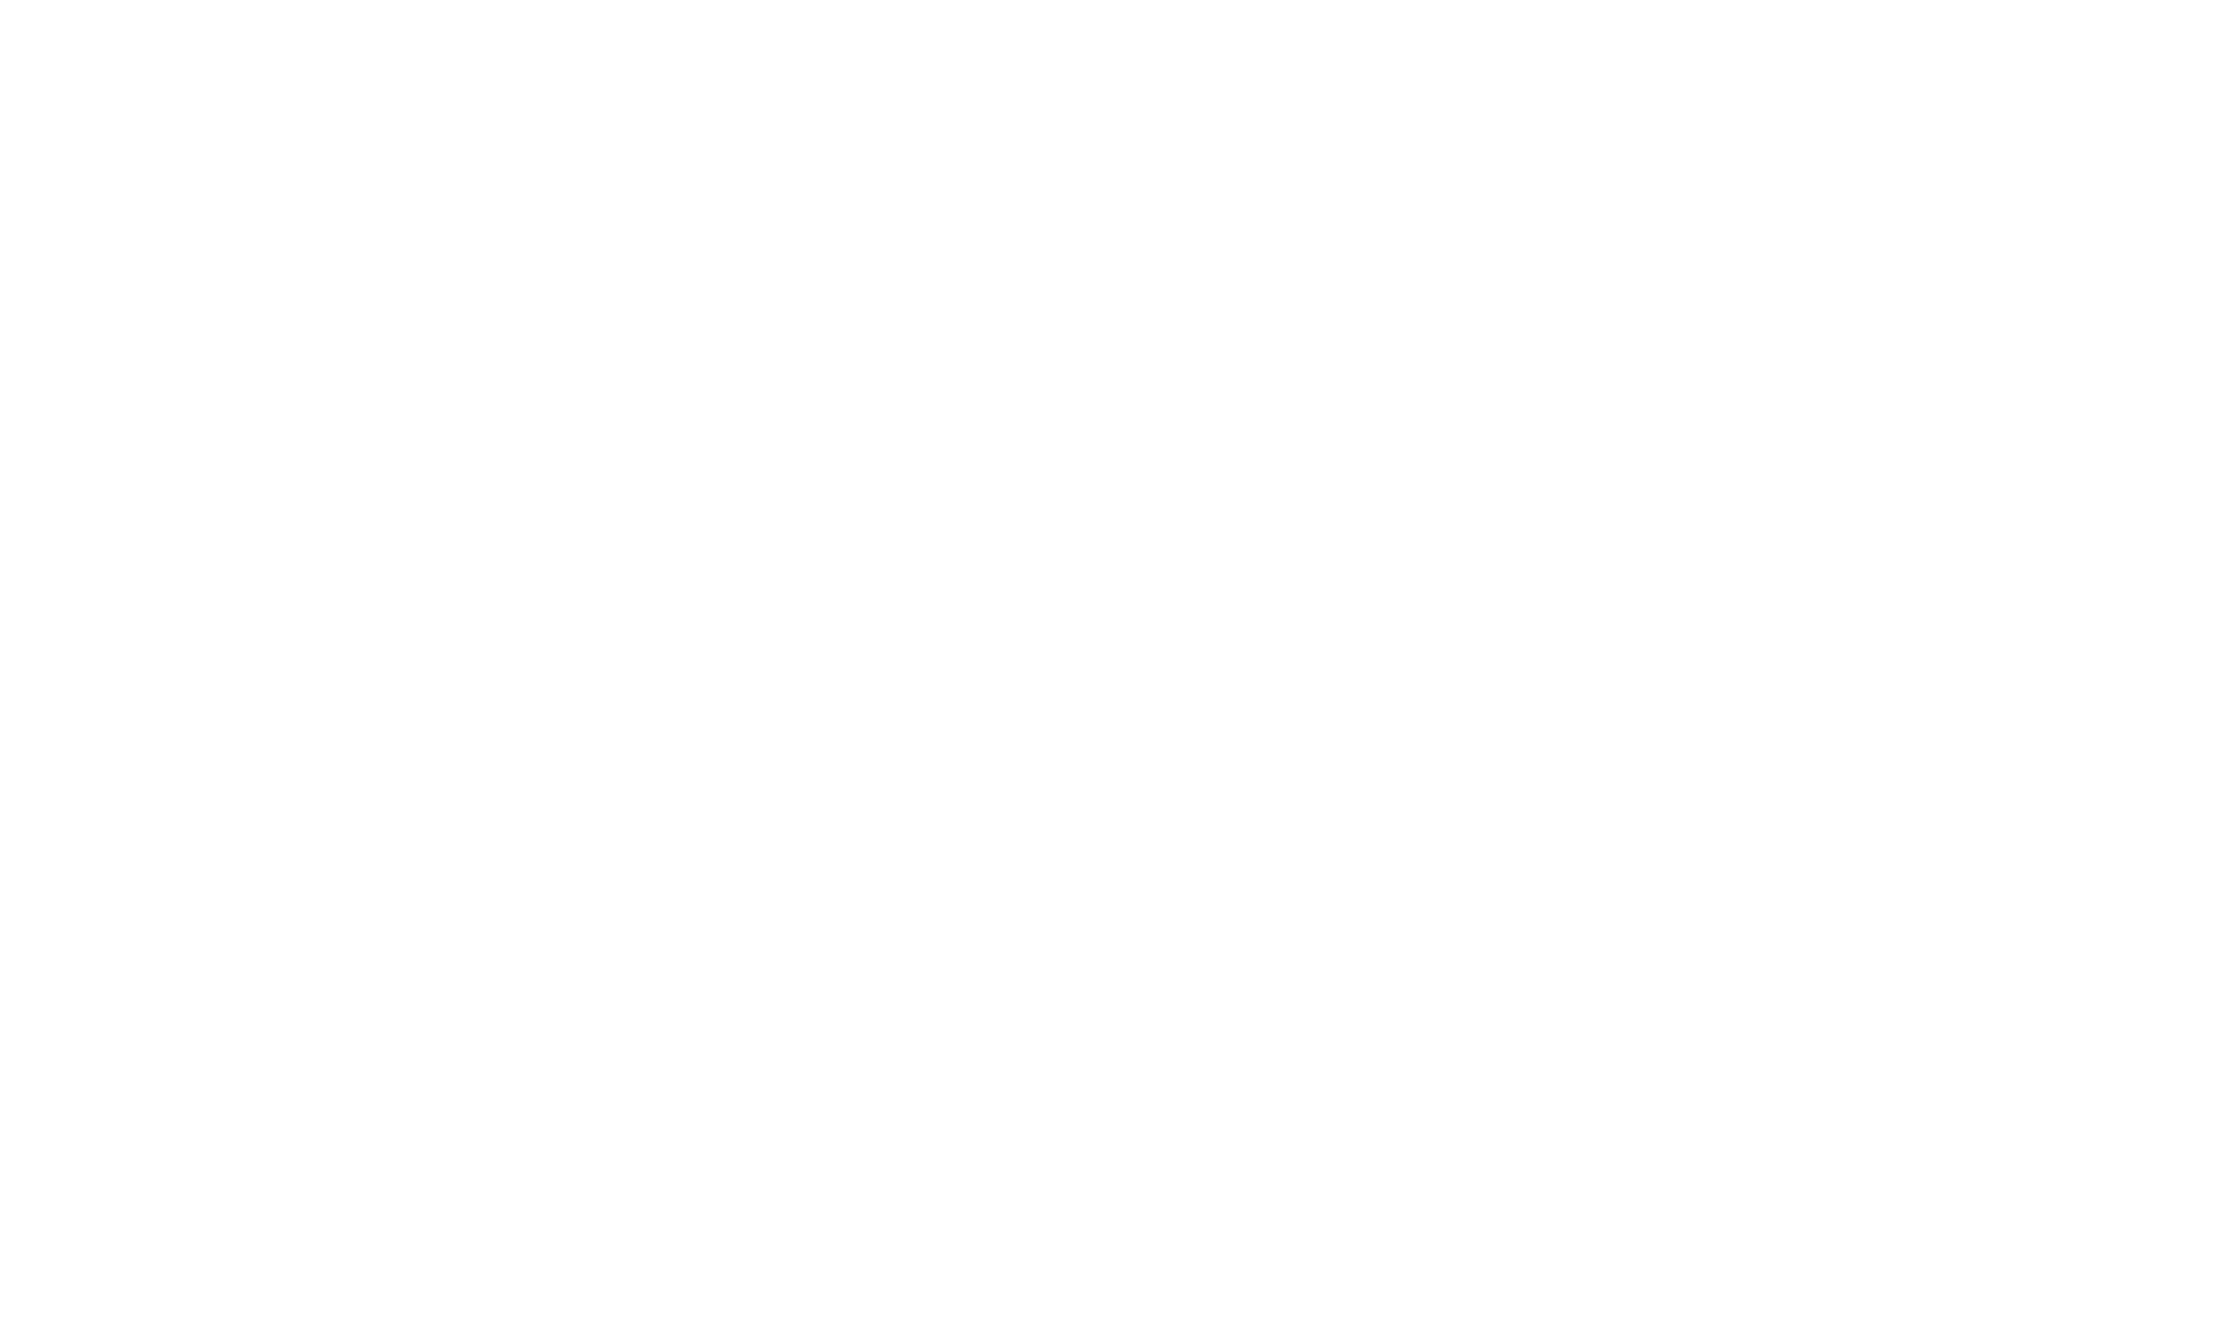 One Seahawk